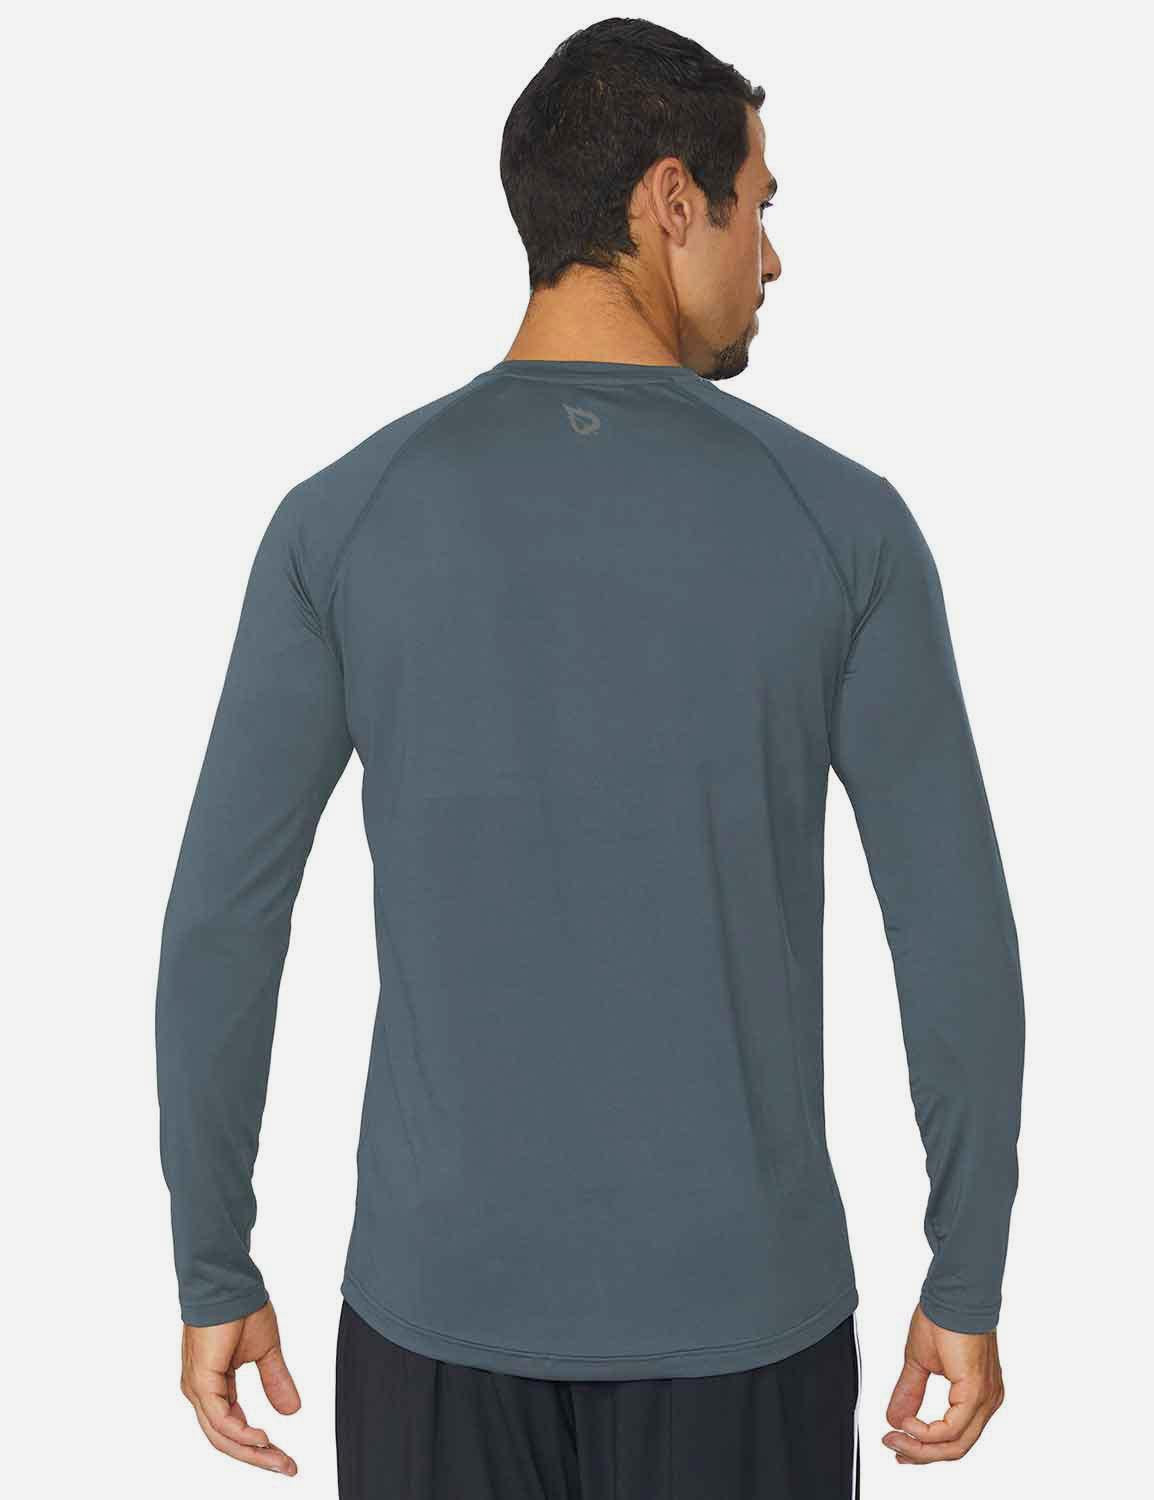 Baleaf Men's Workout Crew-Neck Slim-Cut Long Sleeved Shirt abd195 Slate Gray Back